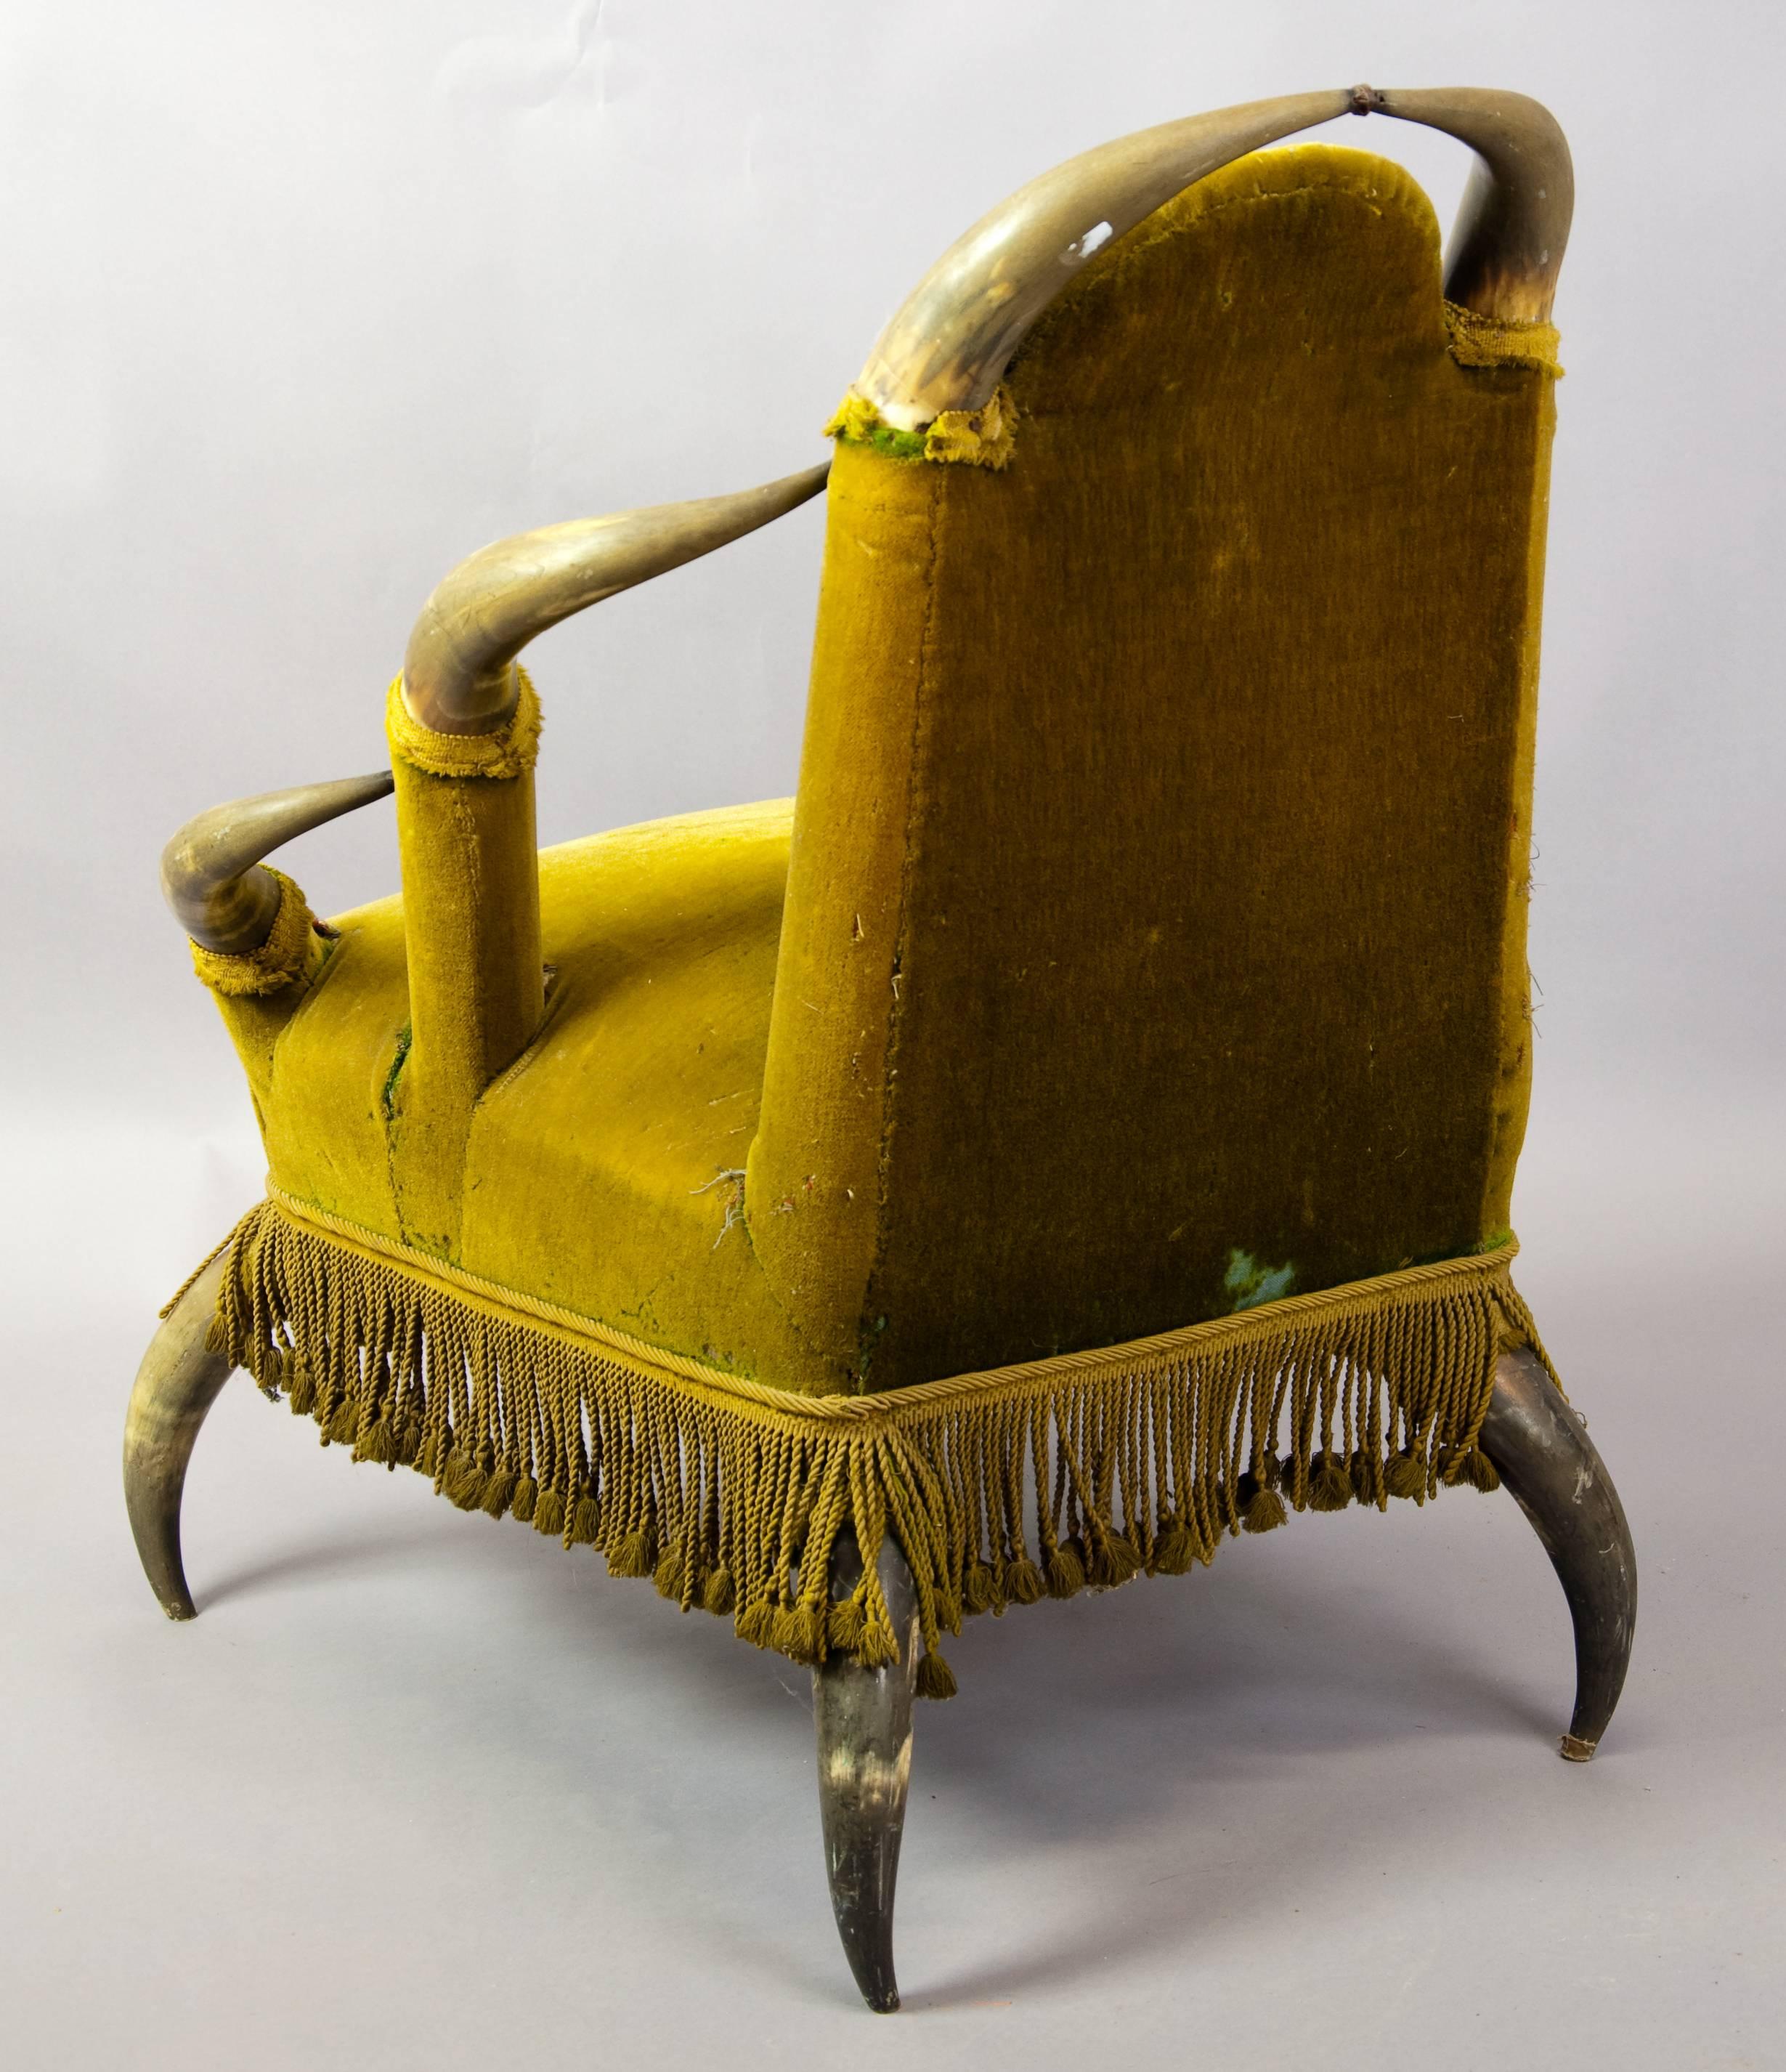 Rustic Antique Bull Horn Chair, Austria, 1870